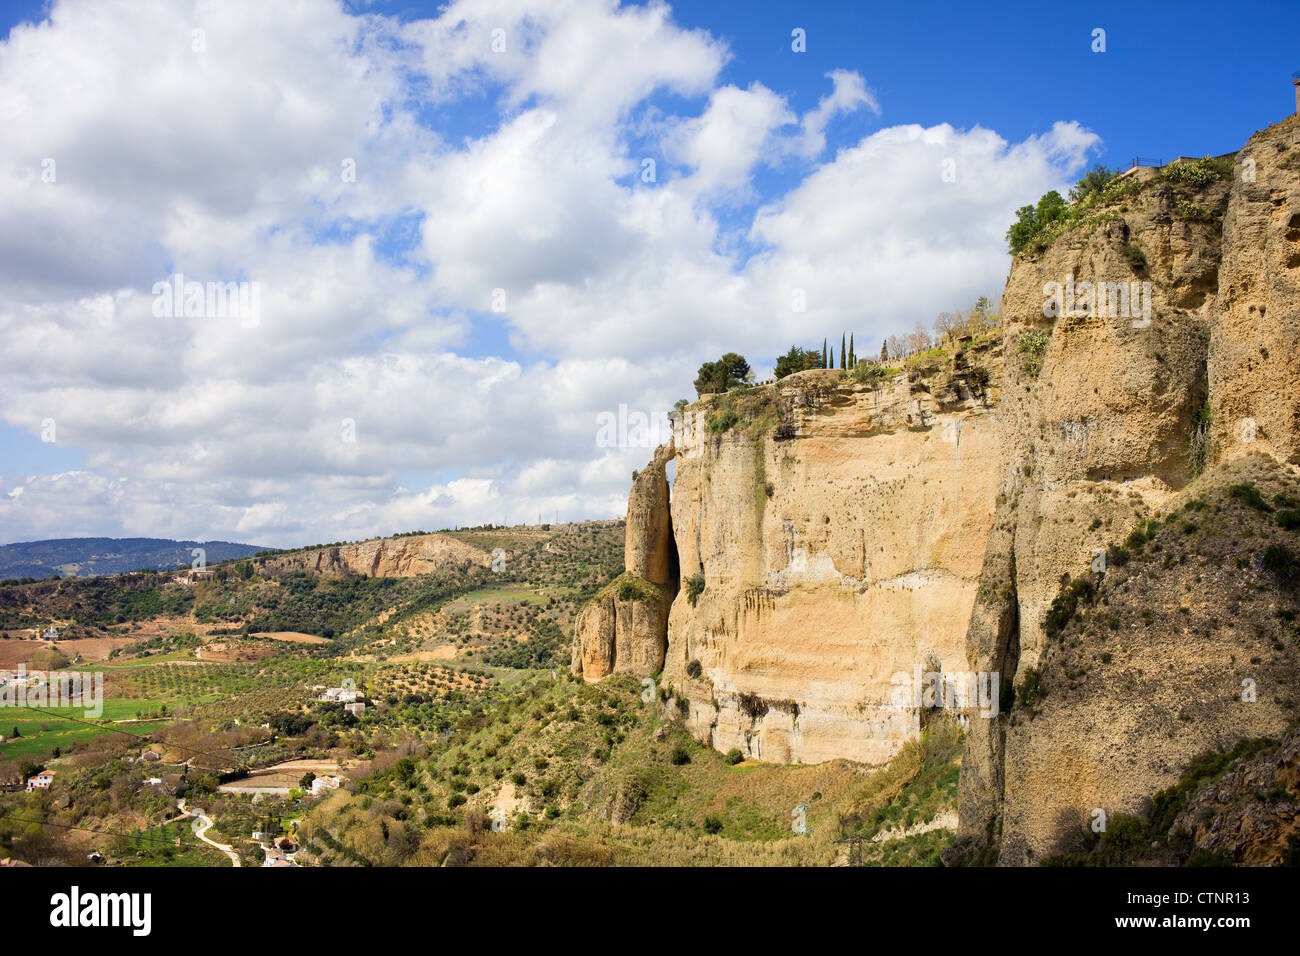 Hautes Falaises de Ronda dans le pittoresque paysage andalou dans le sud de l'Espagne. Banque D'Images